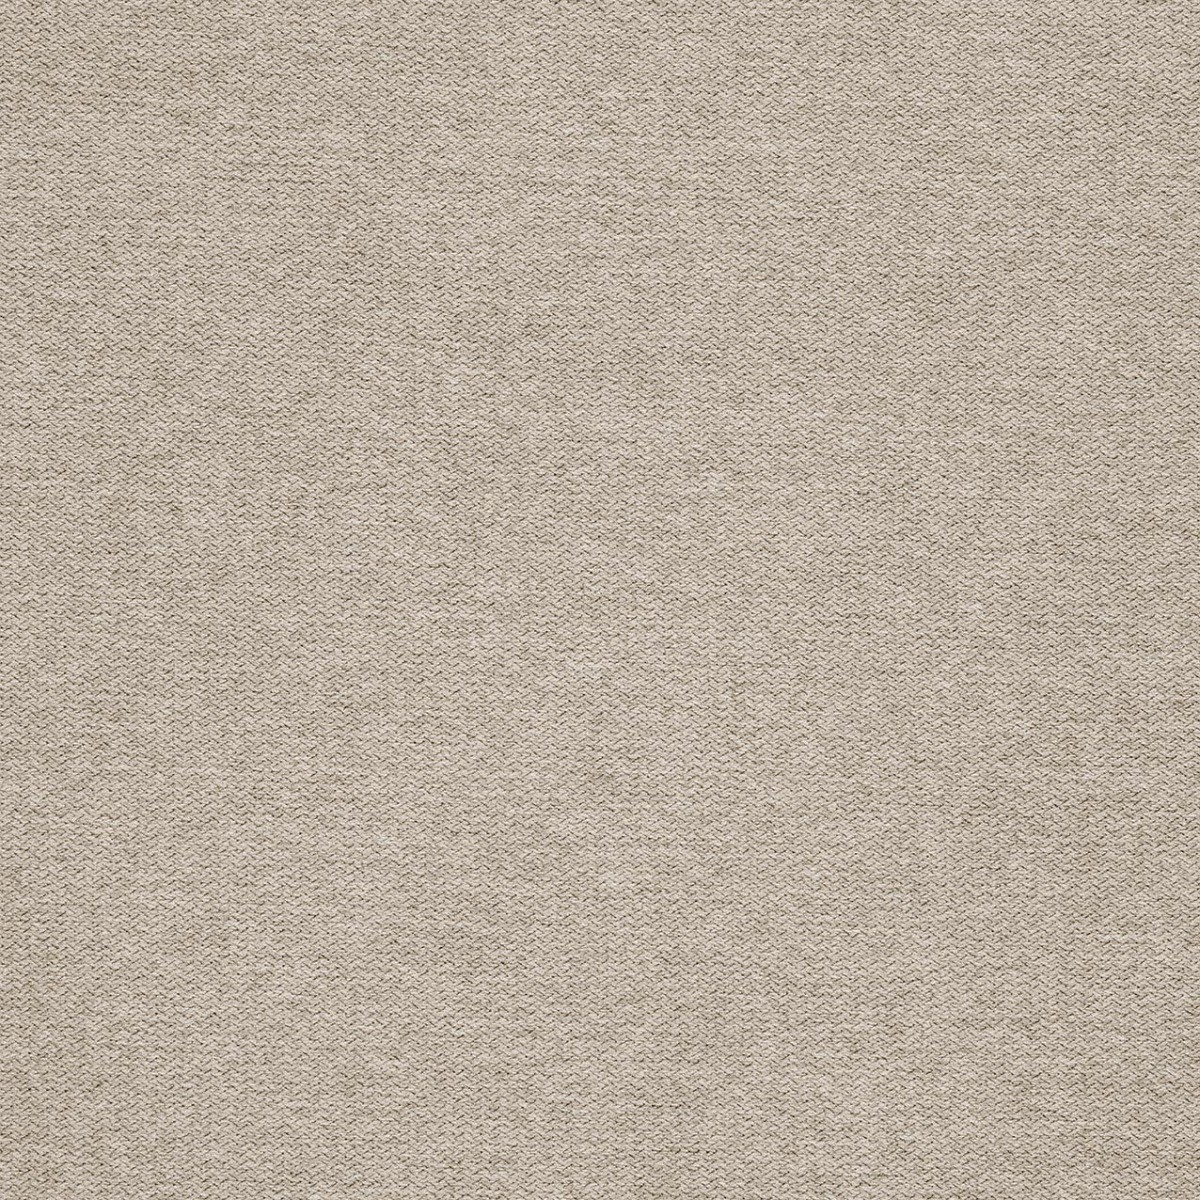  Портьерная ткань MONO CREAM, ширина 277 см  - Фото